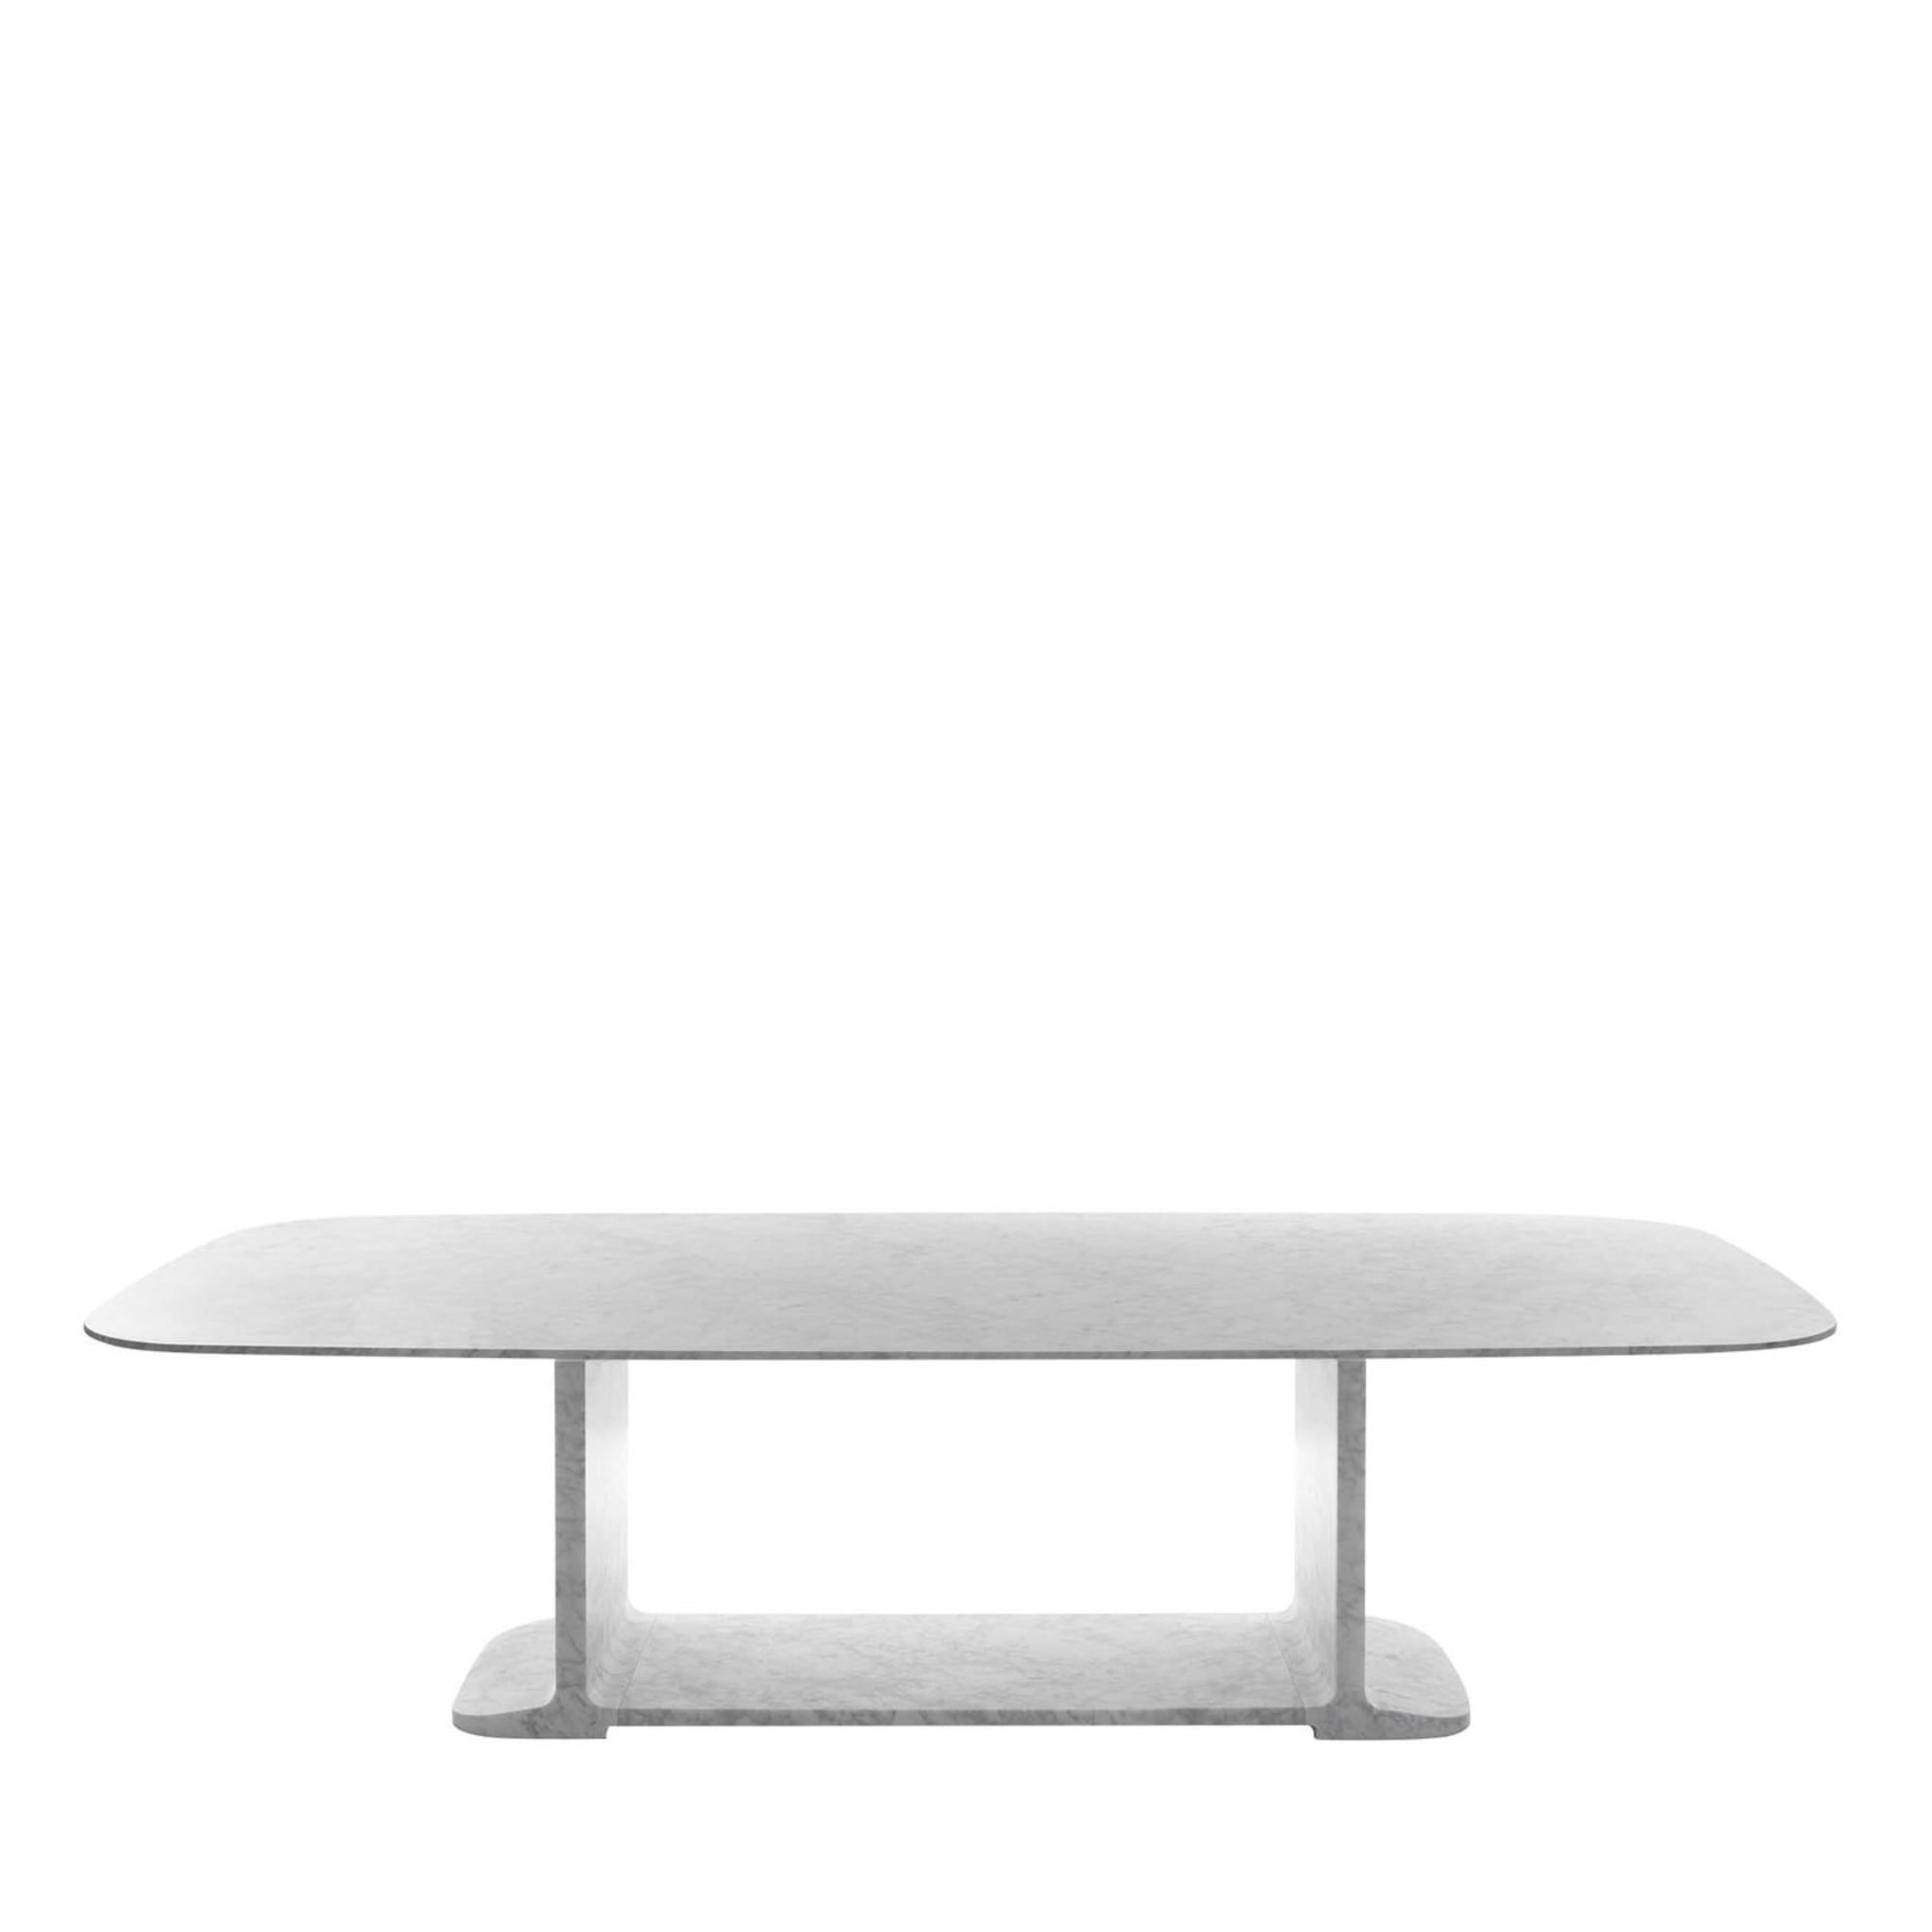 TABLE À MANGER TONI - Design James Irvine 2010 - Vue principale